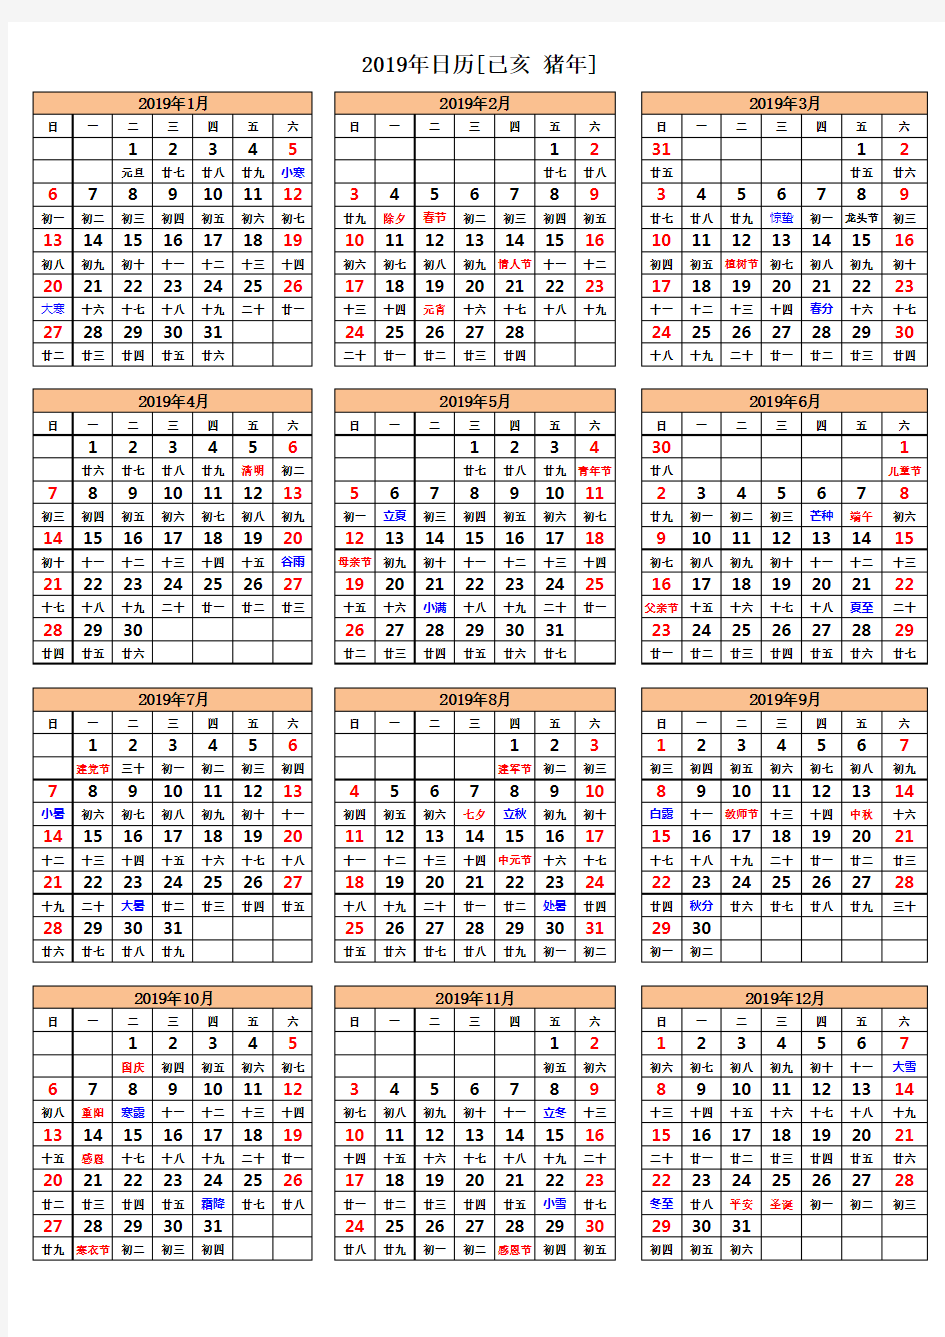 2019年日历表(A4纸完美打印版)